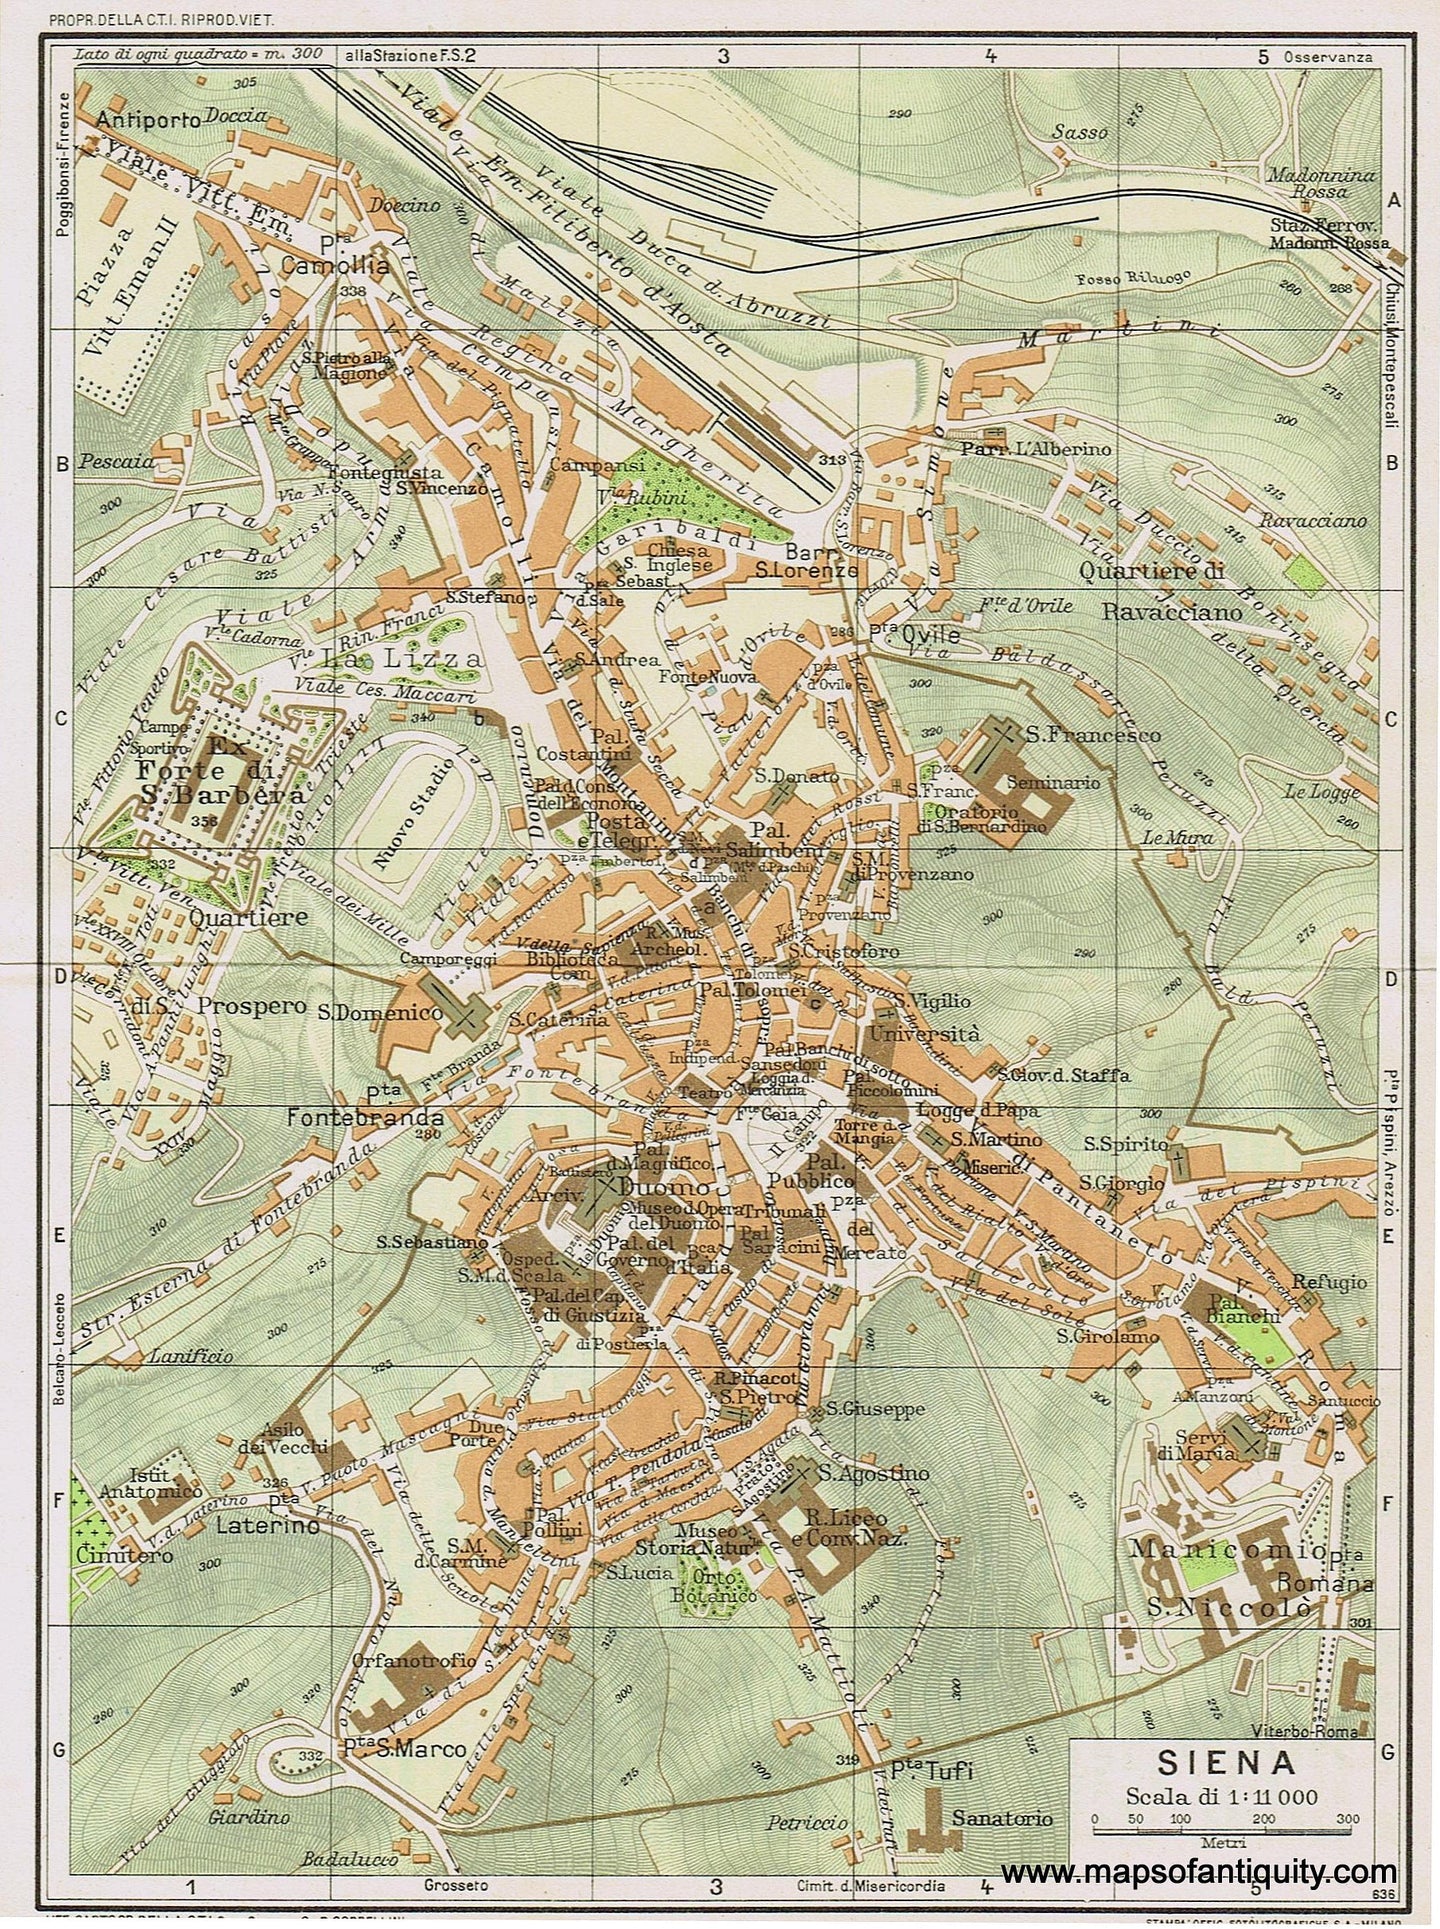 Genuine-Antique-Map--Siena-Italy-1935-Guida-D-italia--Maps-Of-Antiquity